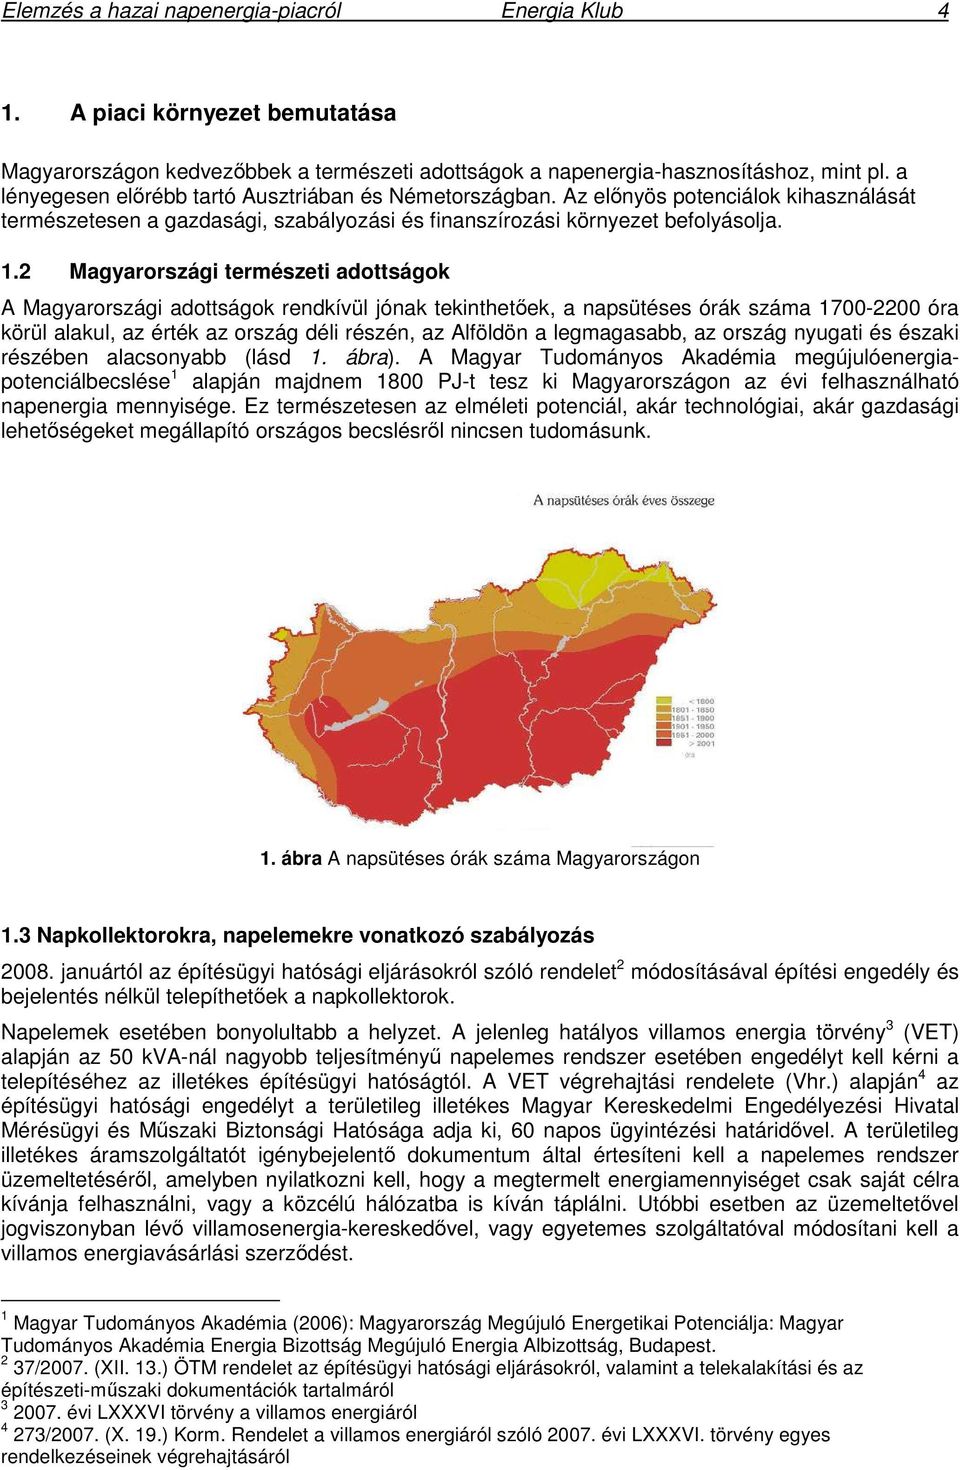 2 Magyarországi természeti adottságok A Magyarországi adottságok rendkívül jónak tekinthetek, a napsütéses órák száma 1700-2200 óra körül alakul, az érték az ország déli részén, az Alföldön a